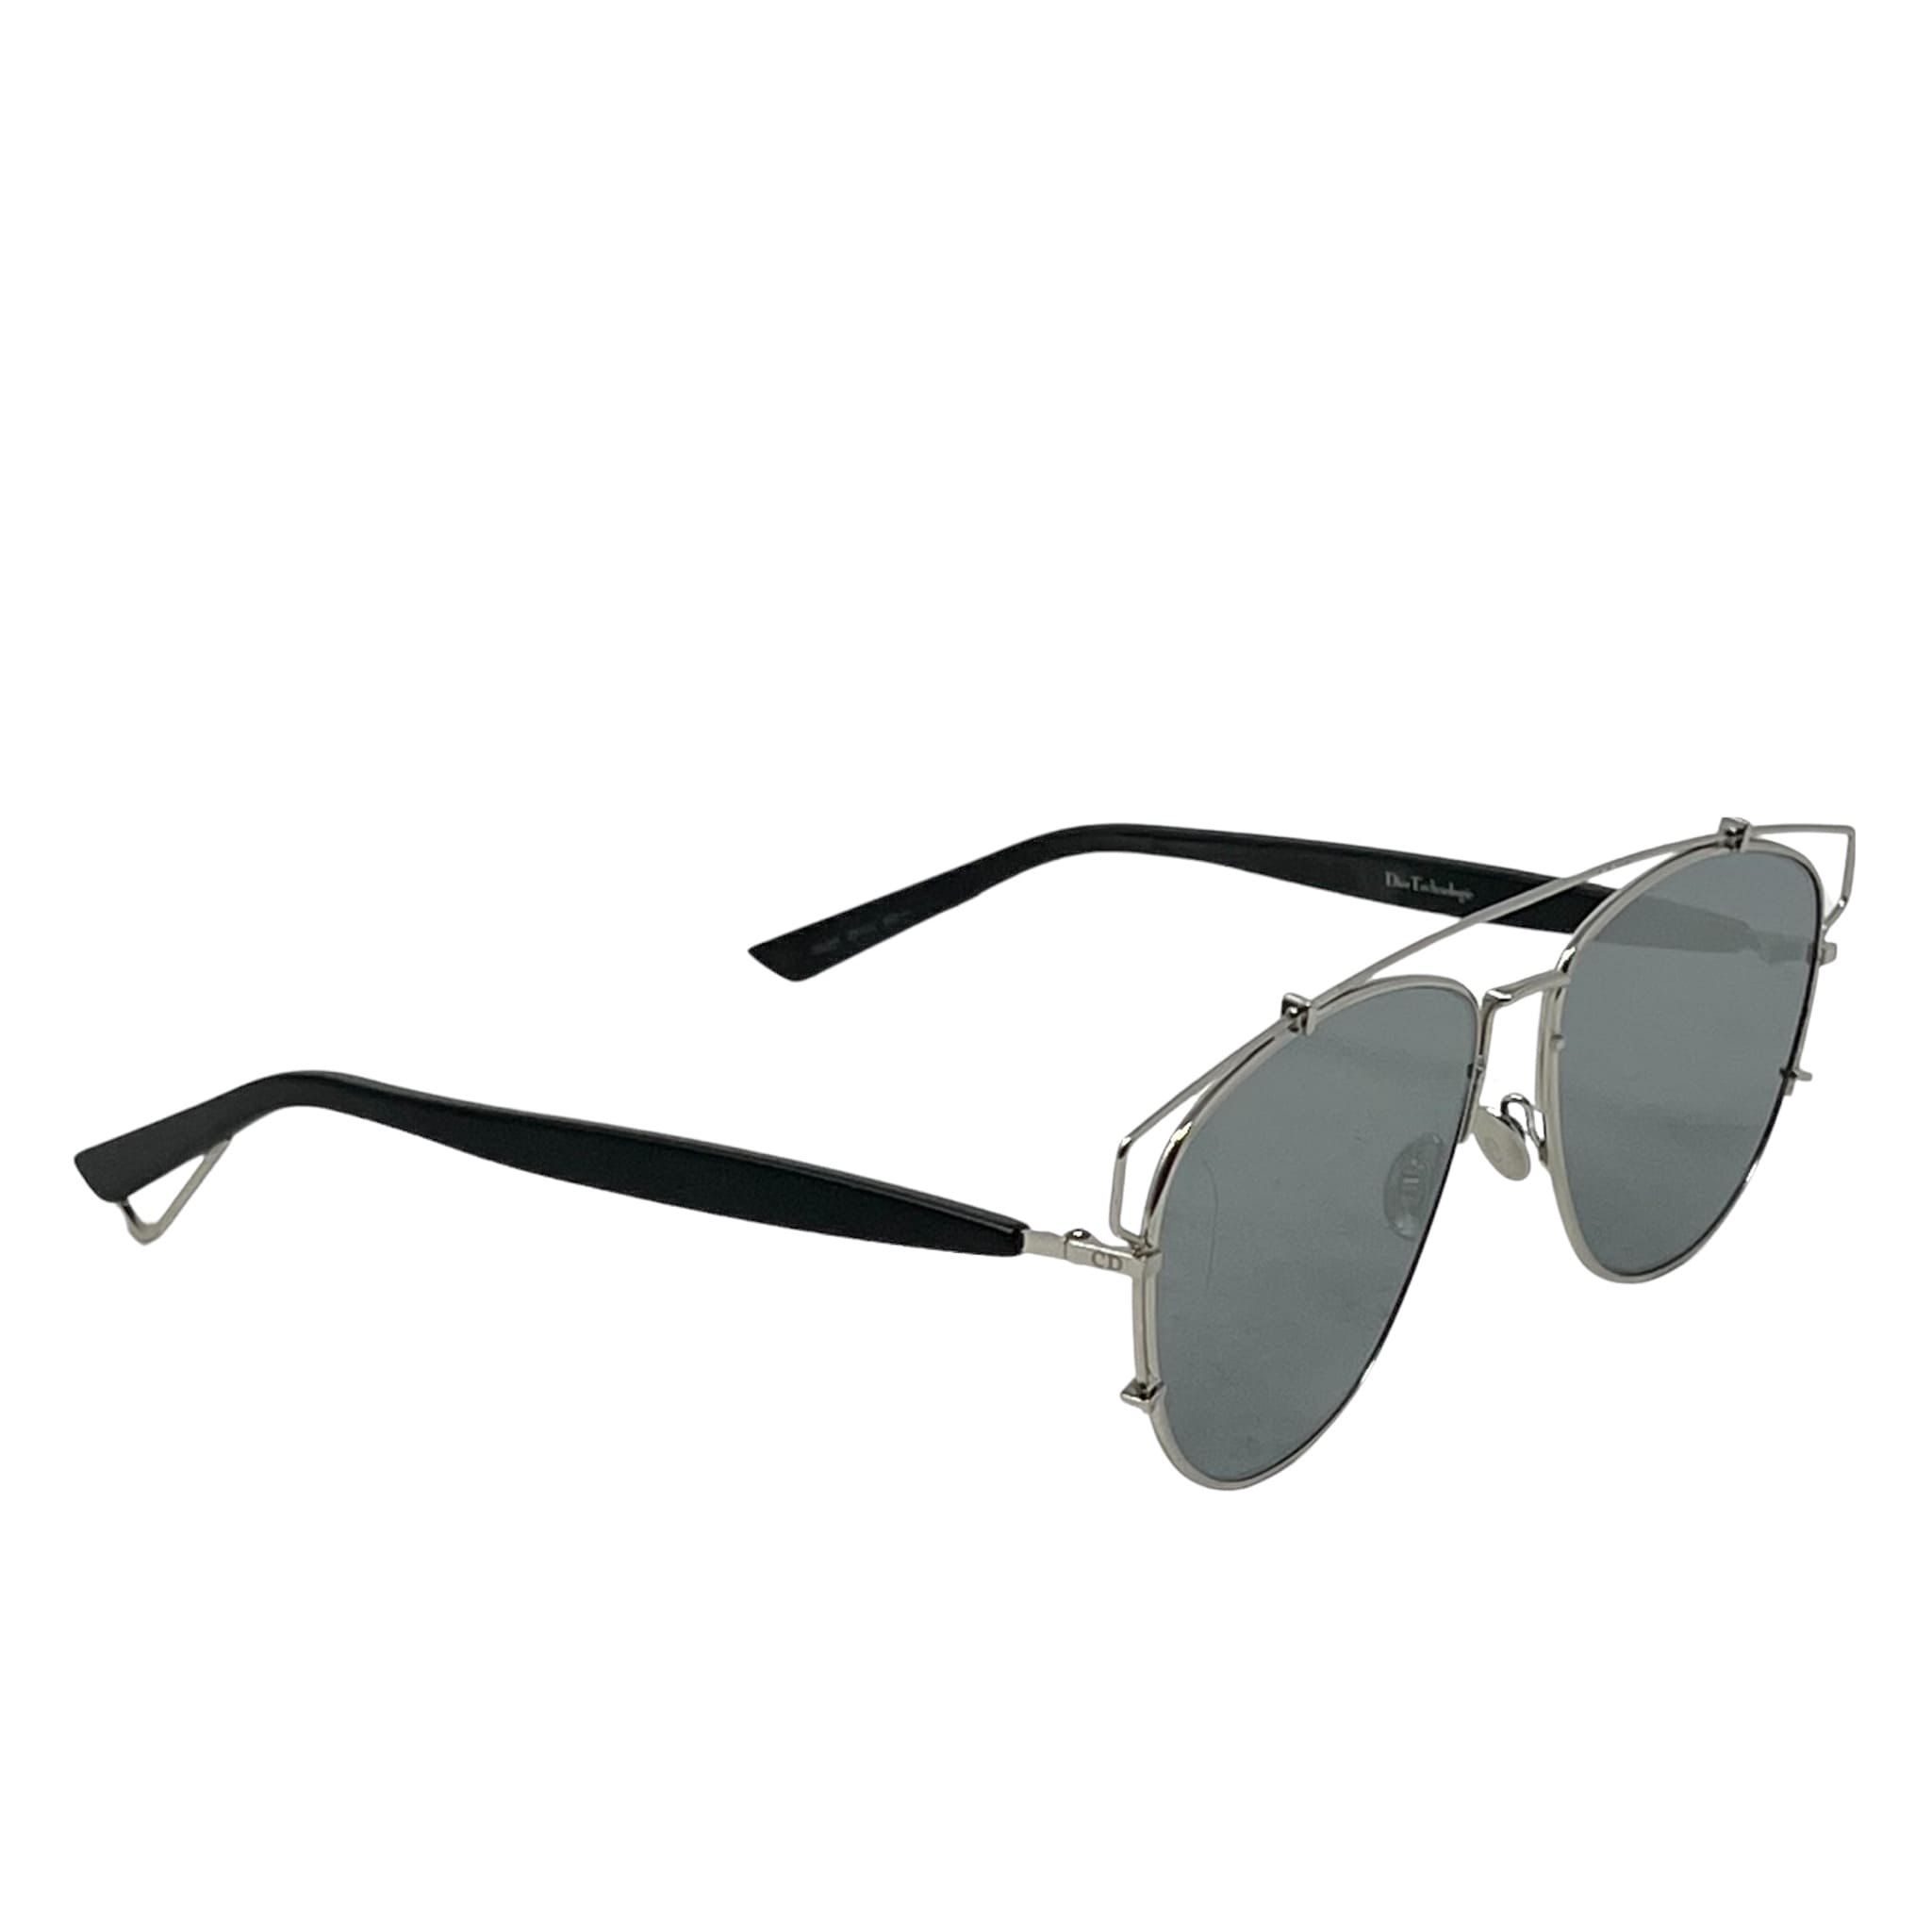 Dior Silver Technologic Aviator Sunglasses